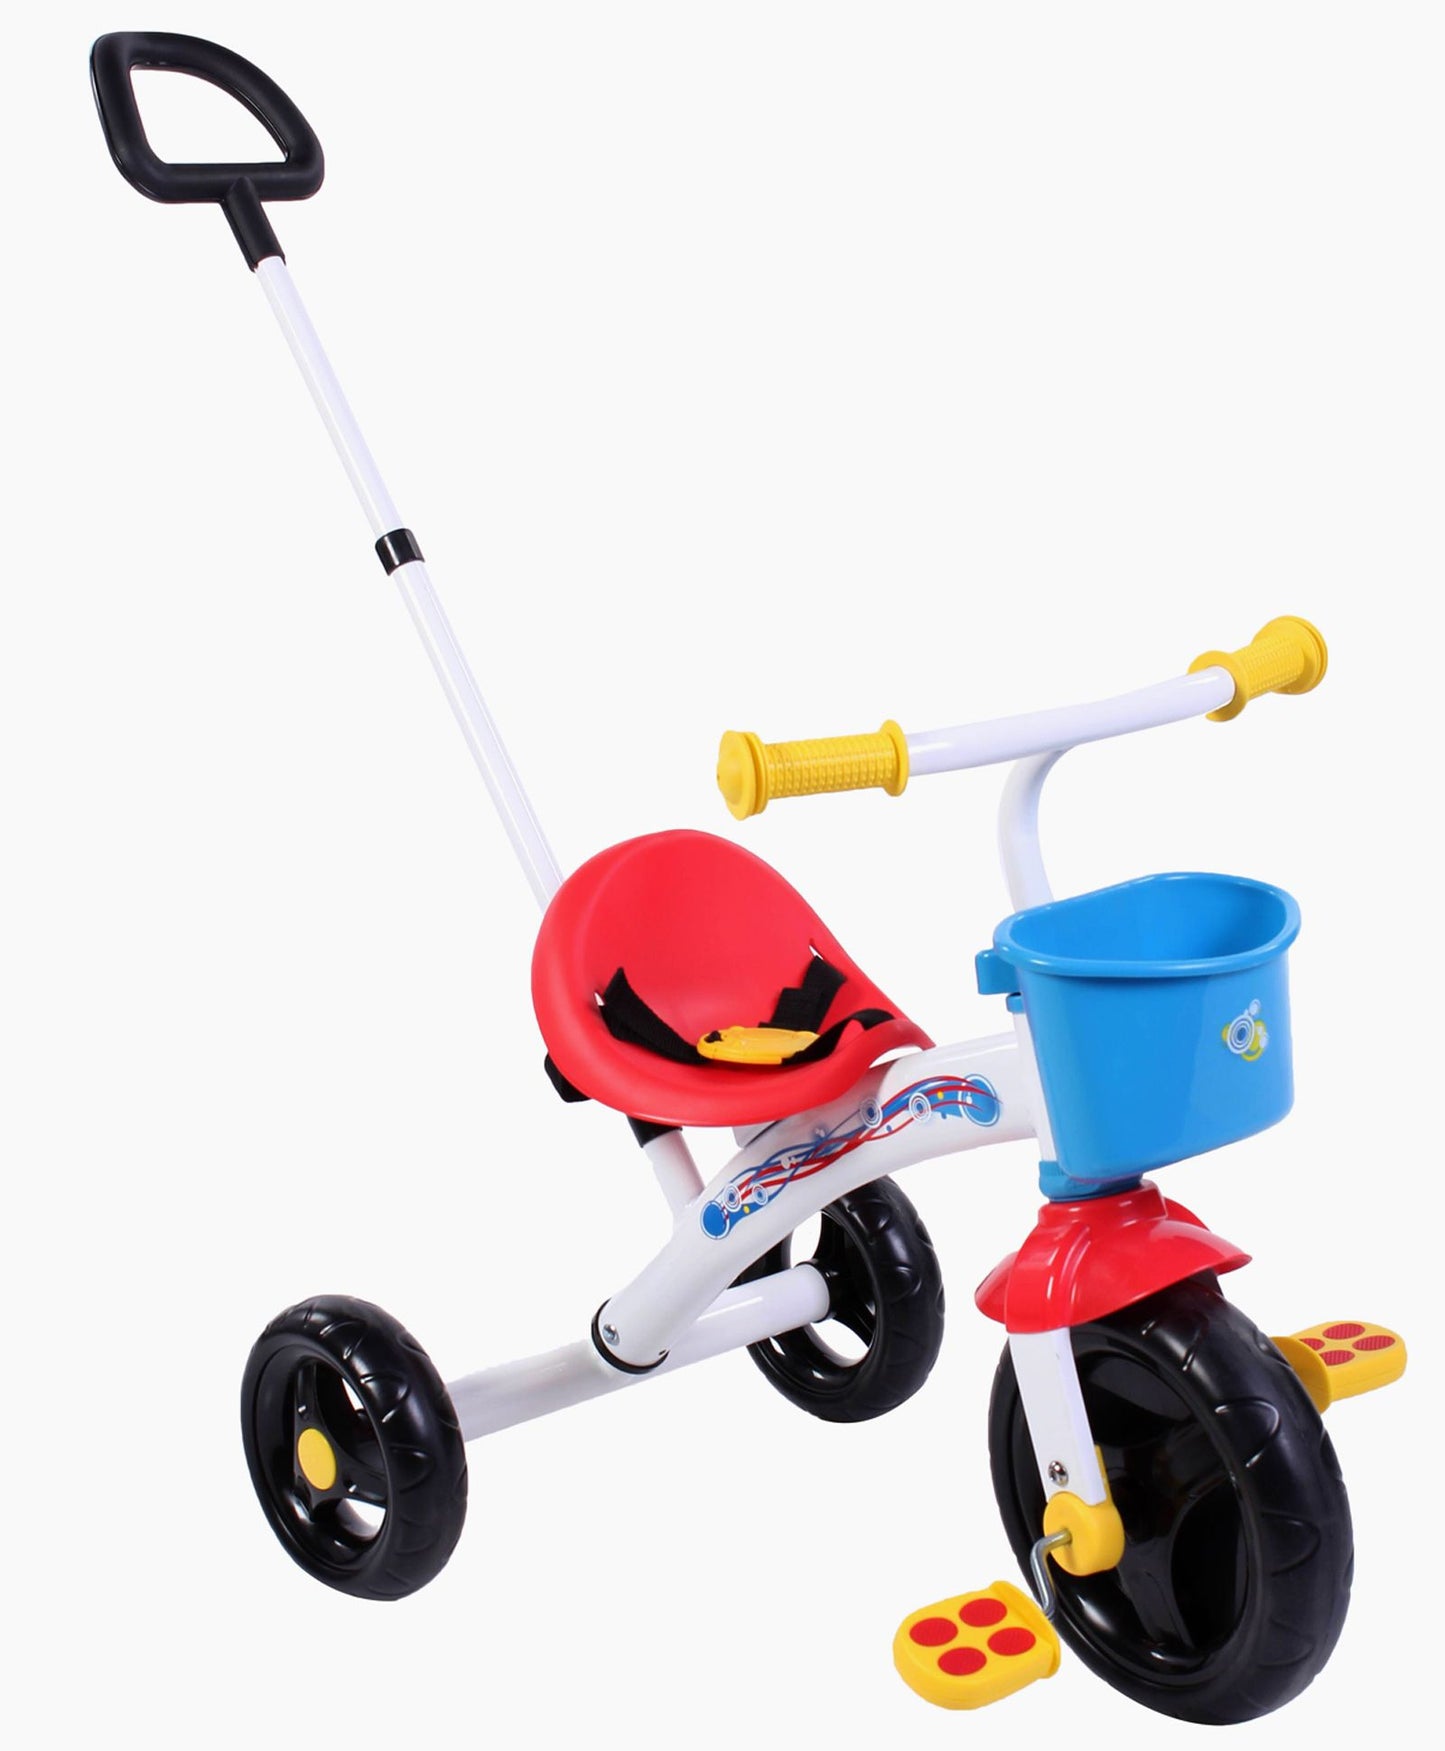 Chicco Toys - U-Go Trike